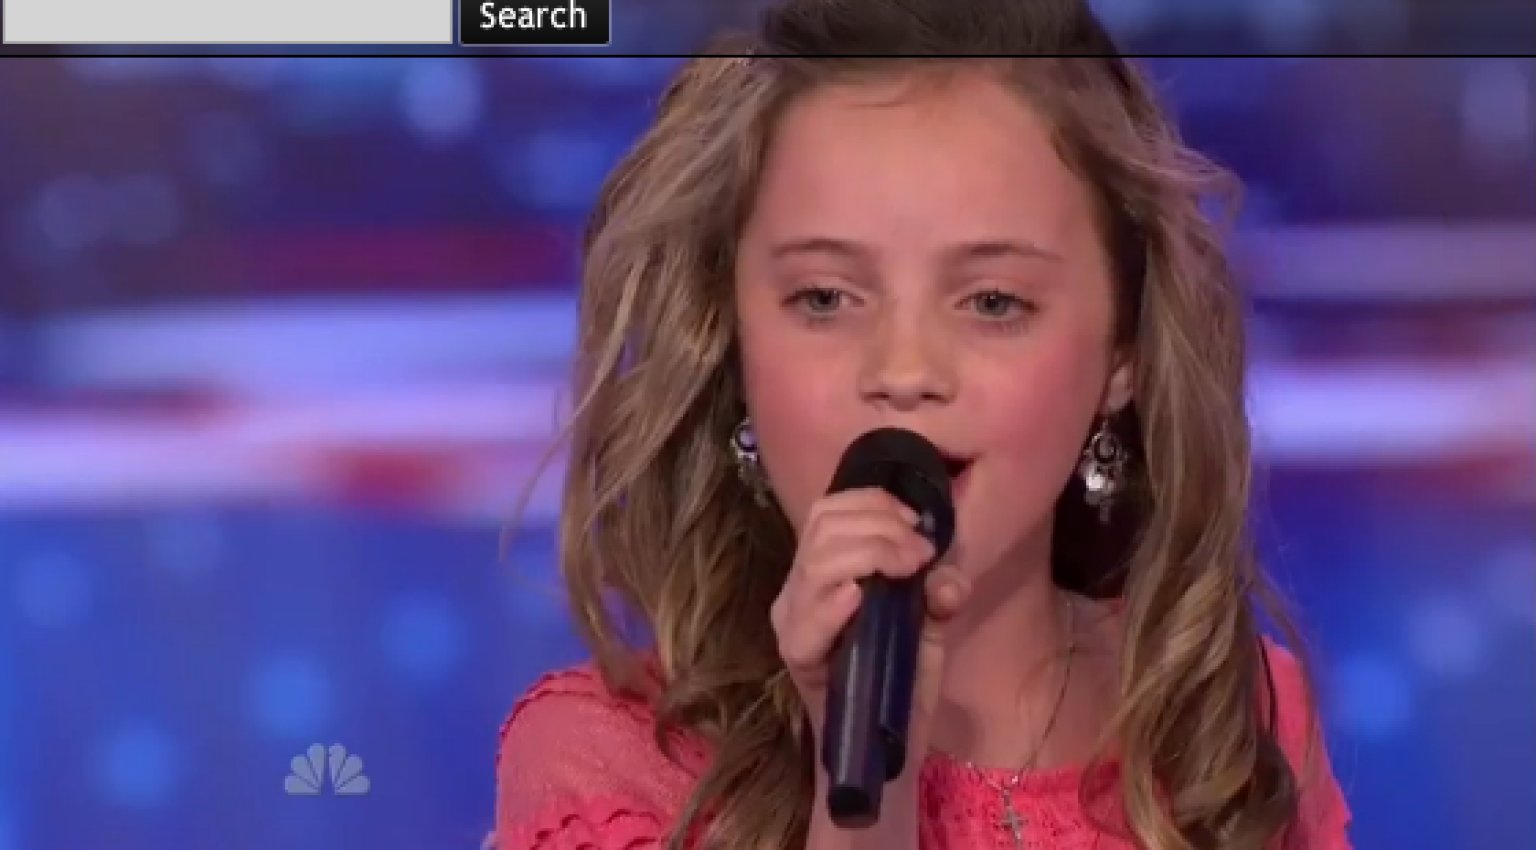 Chloe Channell, 11, Sings 'AllAmerican Girl' On 'America's Got Talent